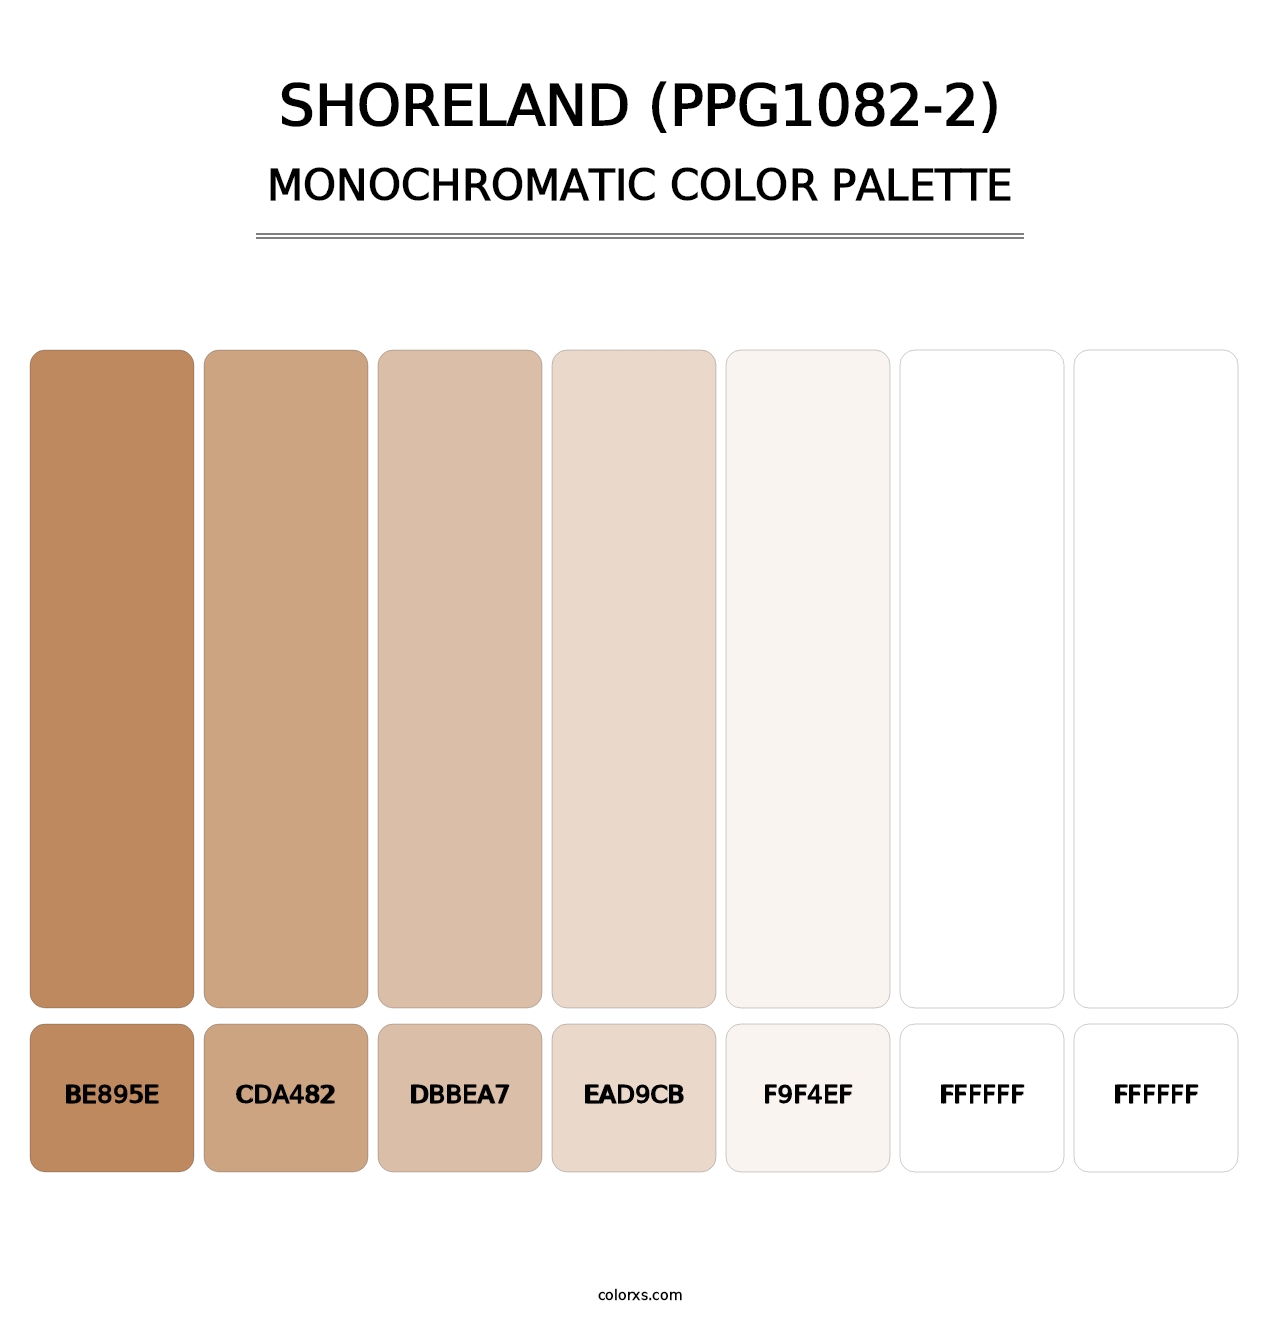 Shoreland (PPG1082-2) - Monochromatic Color Palette